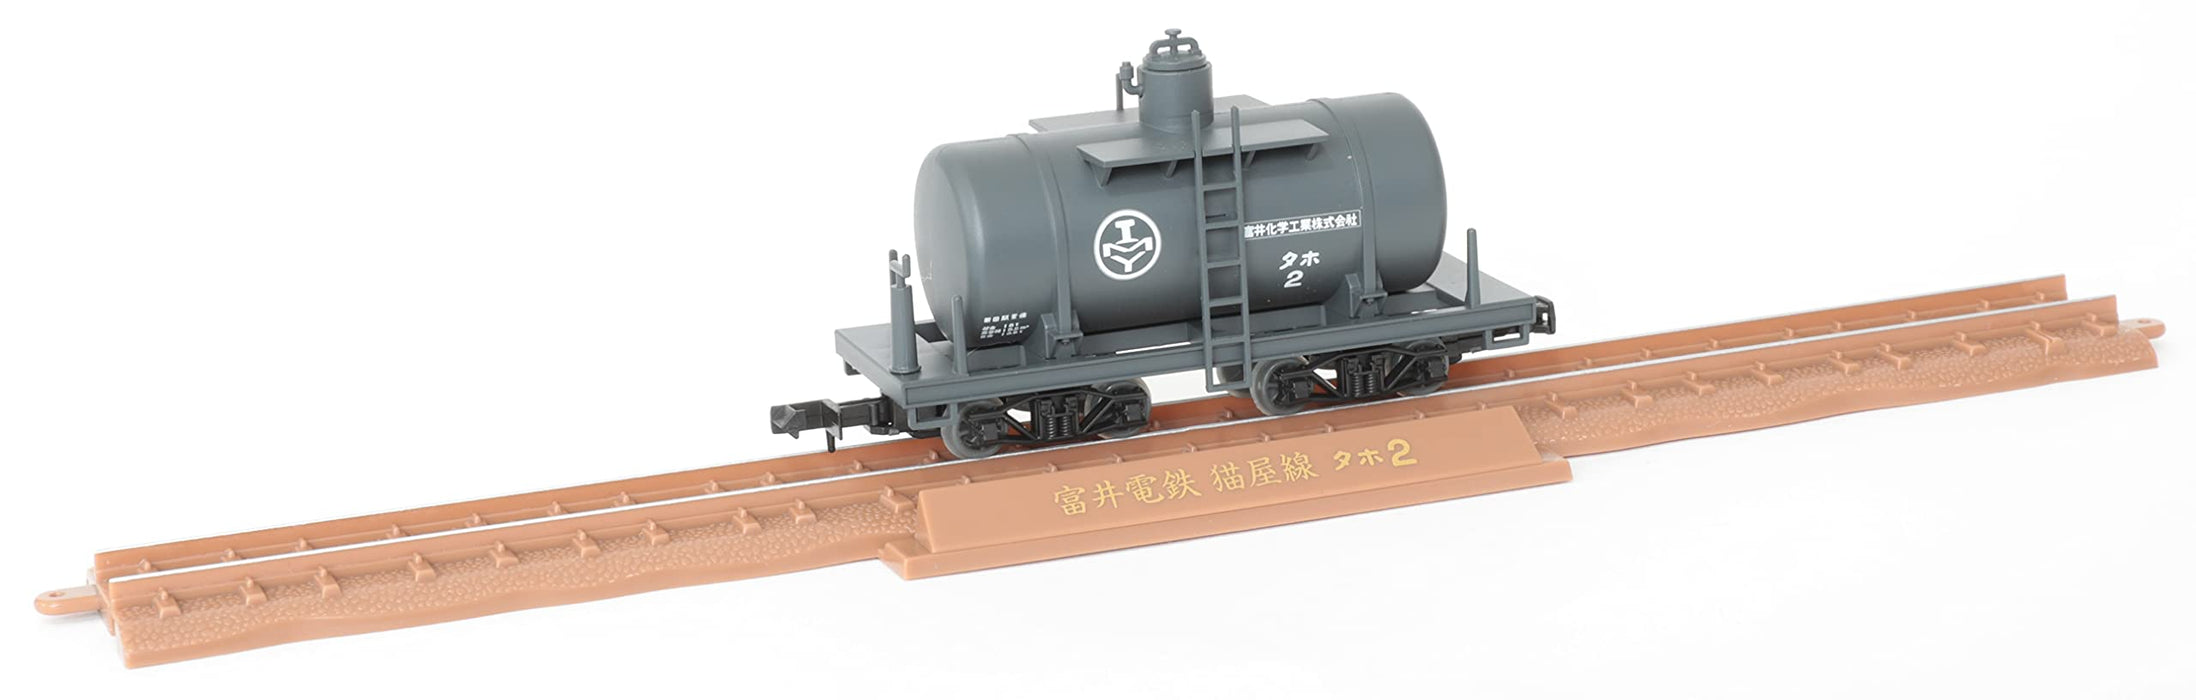 Tomytec Railway Collection - Narrow Gauge 80 Nekoya Line 2-Car Set Electric Locomotive and Tank Freight Car Diorama Supplies